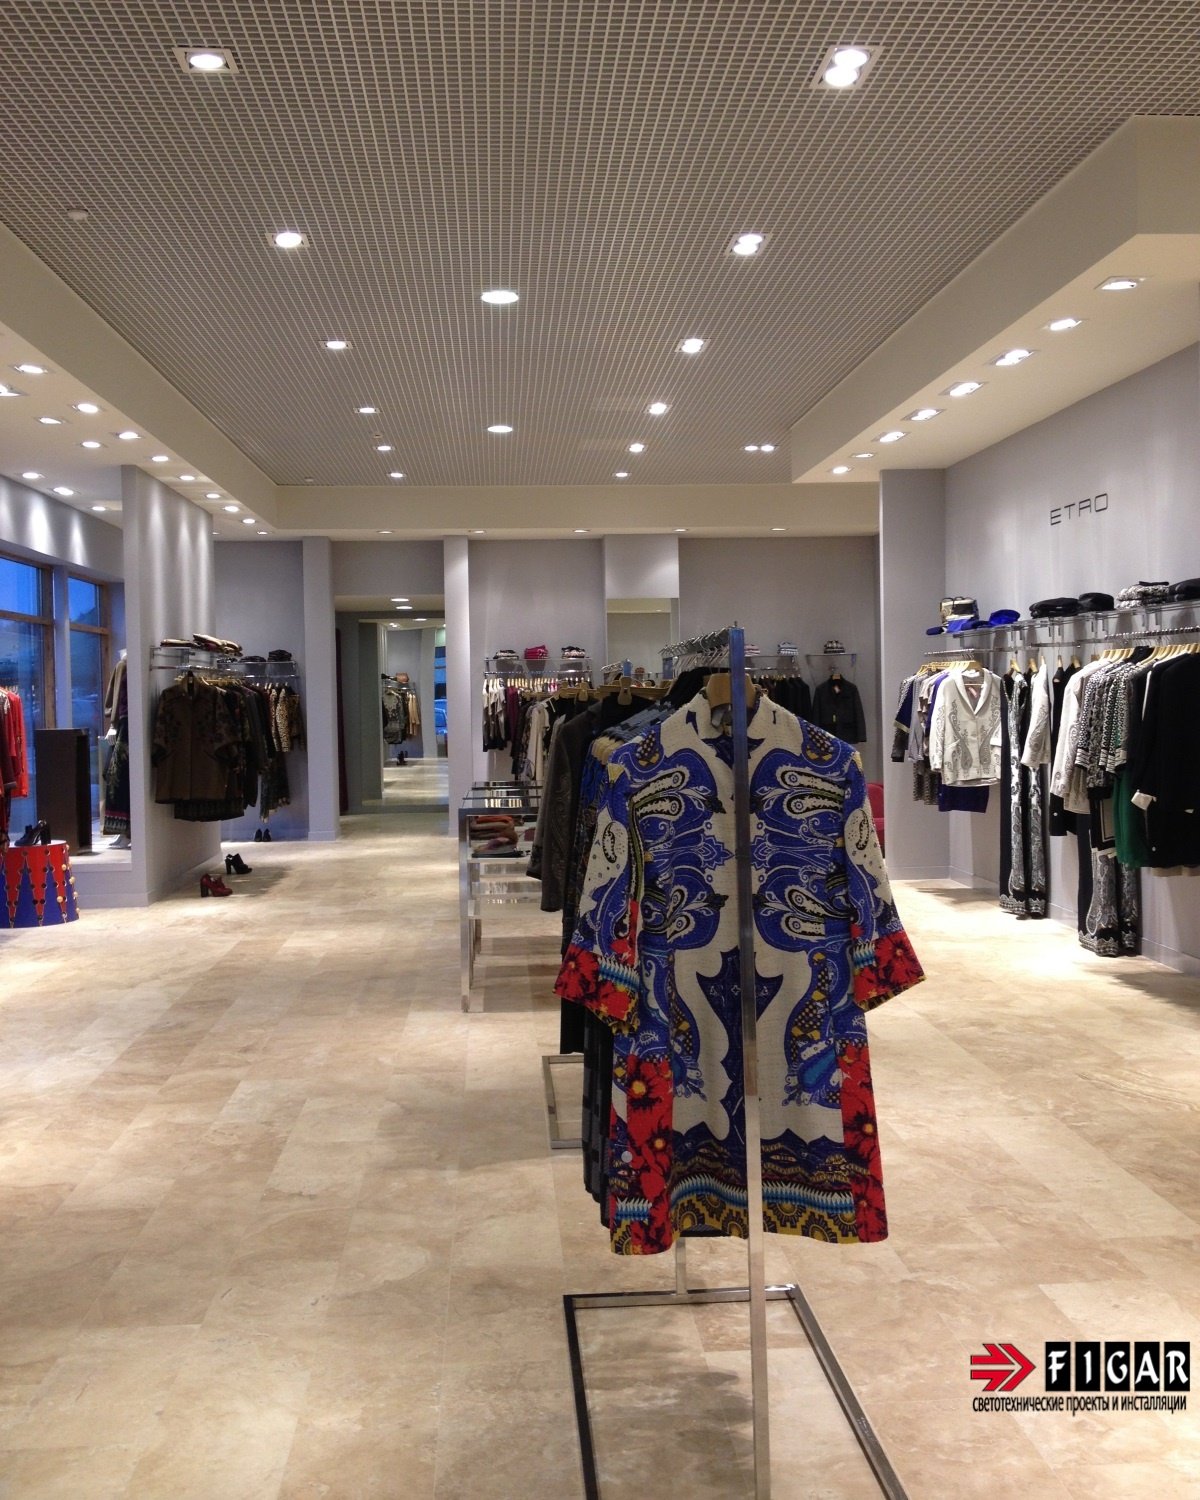 Освещение магазина одежды итальянского бренда ETRO